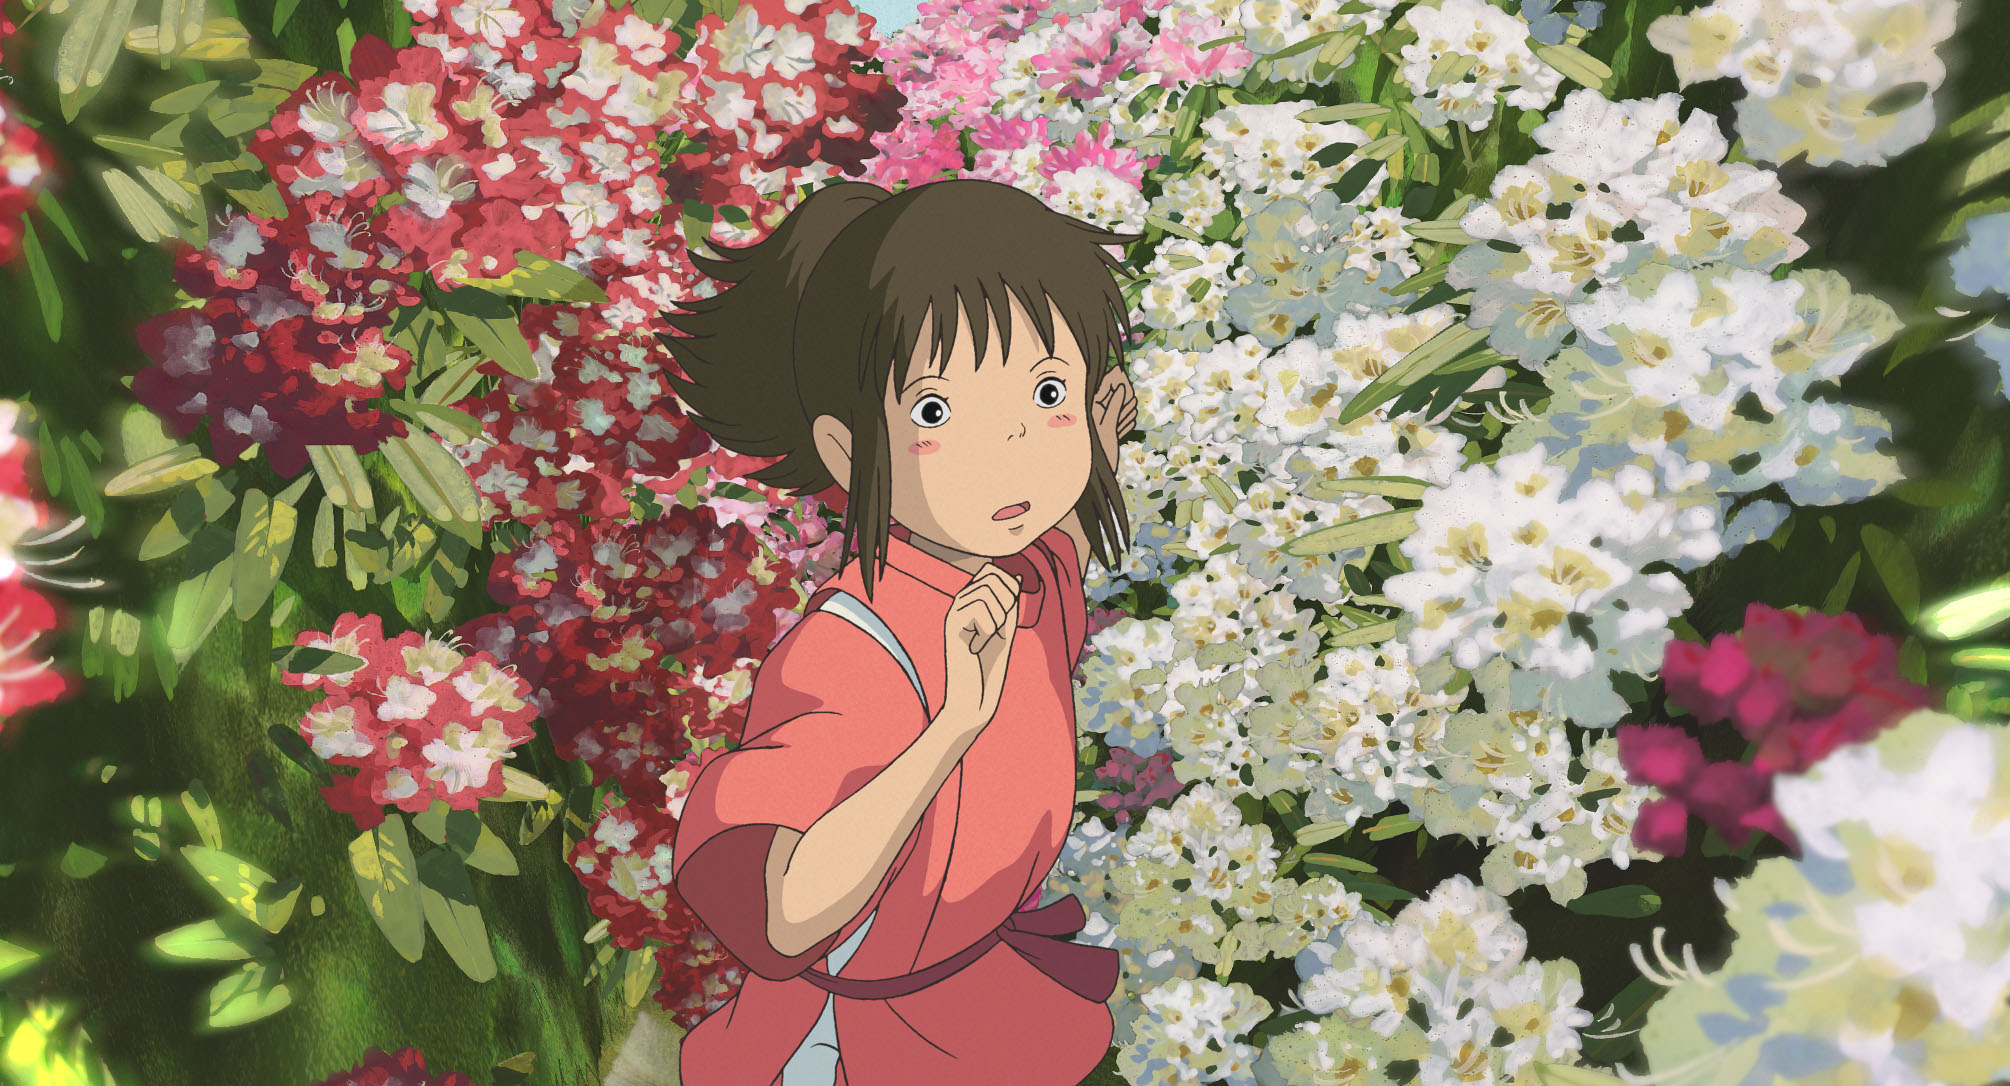 Imagem do filme de animação “A Viagem de Chihiro”. A cena se passa de dia. No centro, vemos Chihiro, uma garota asiática, de pele branca, bochechas rosadas e cabelos castanhos presos em um rabo de cavalo, vestindo um kimono vermelho. Ela se esgueira entre um grande jardim de flores brancas e vermelhas, e seu semblante é confuso.